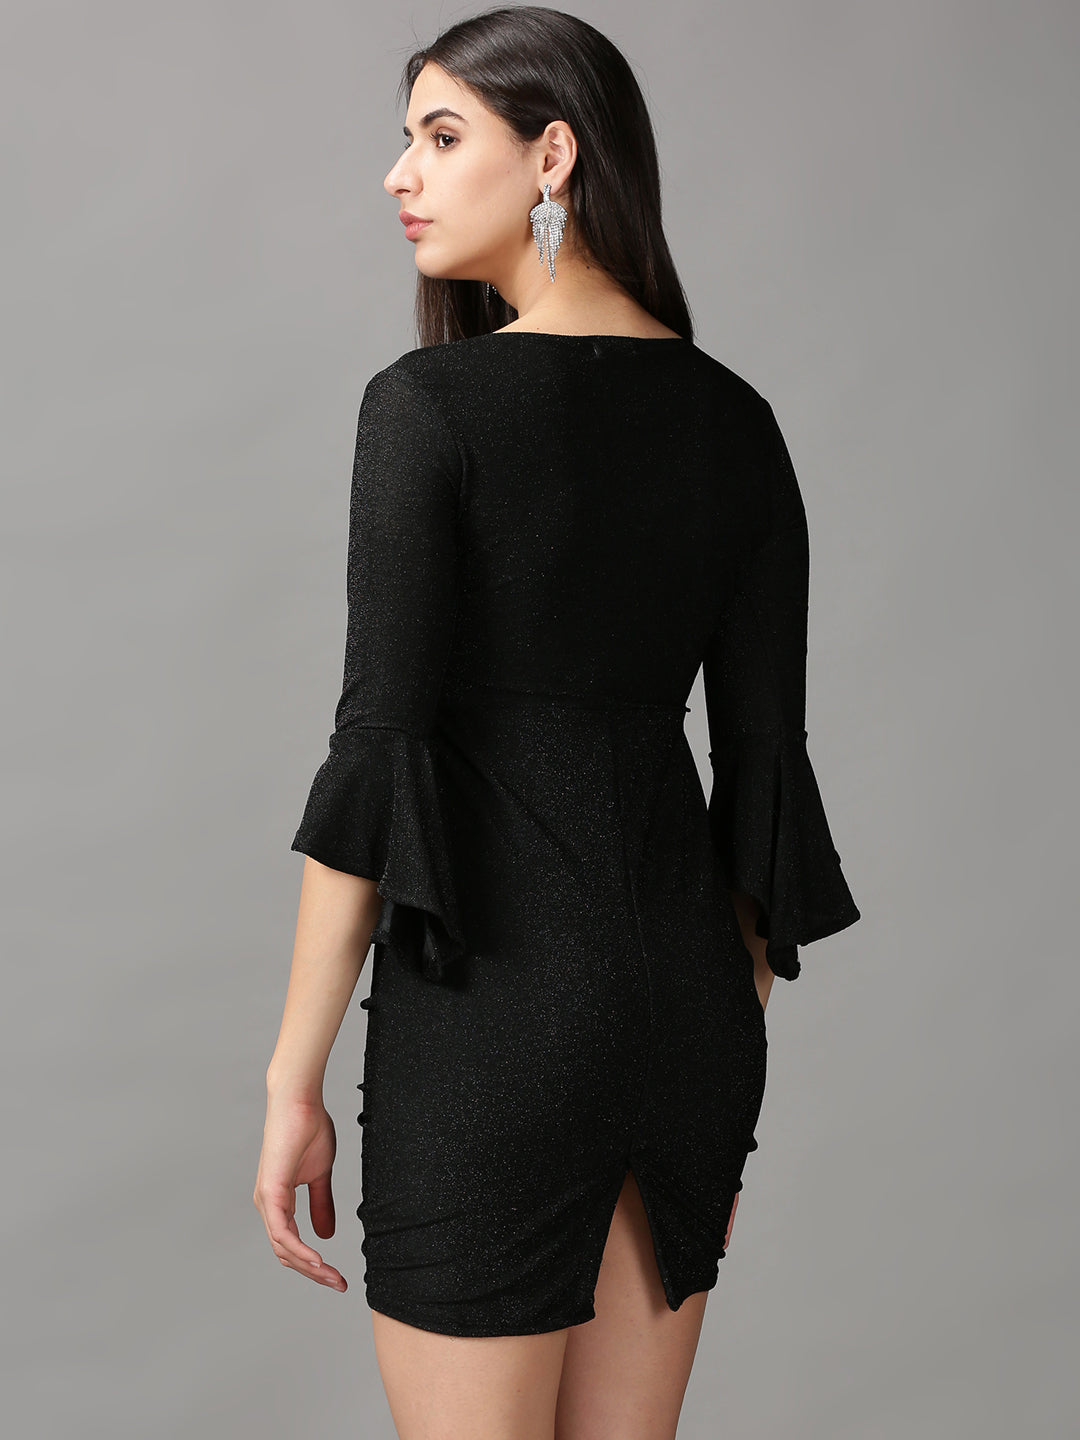 Women's Black Solid Wrap Dress